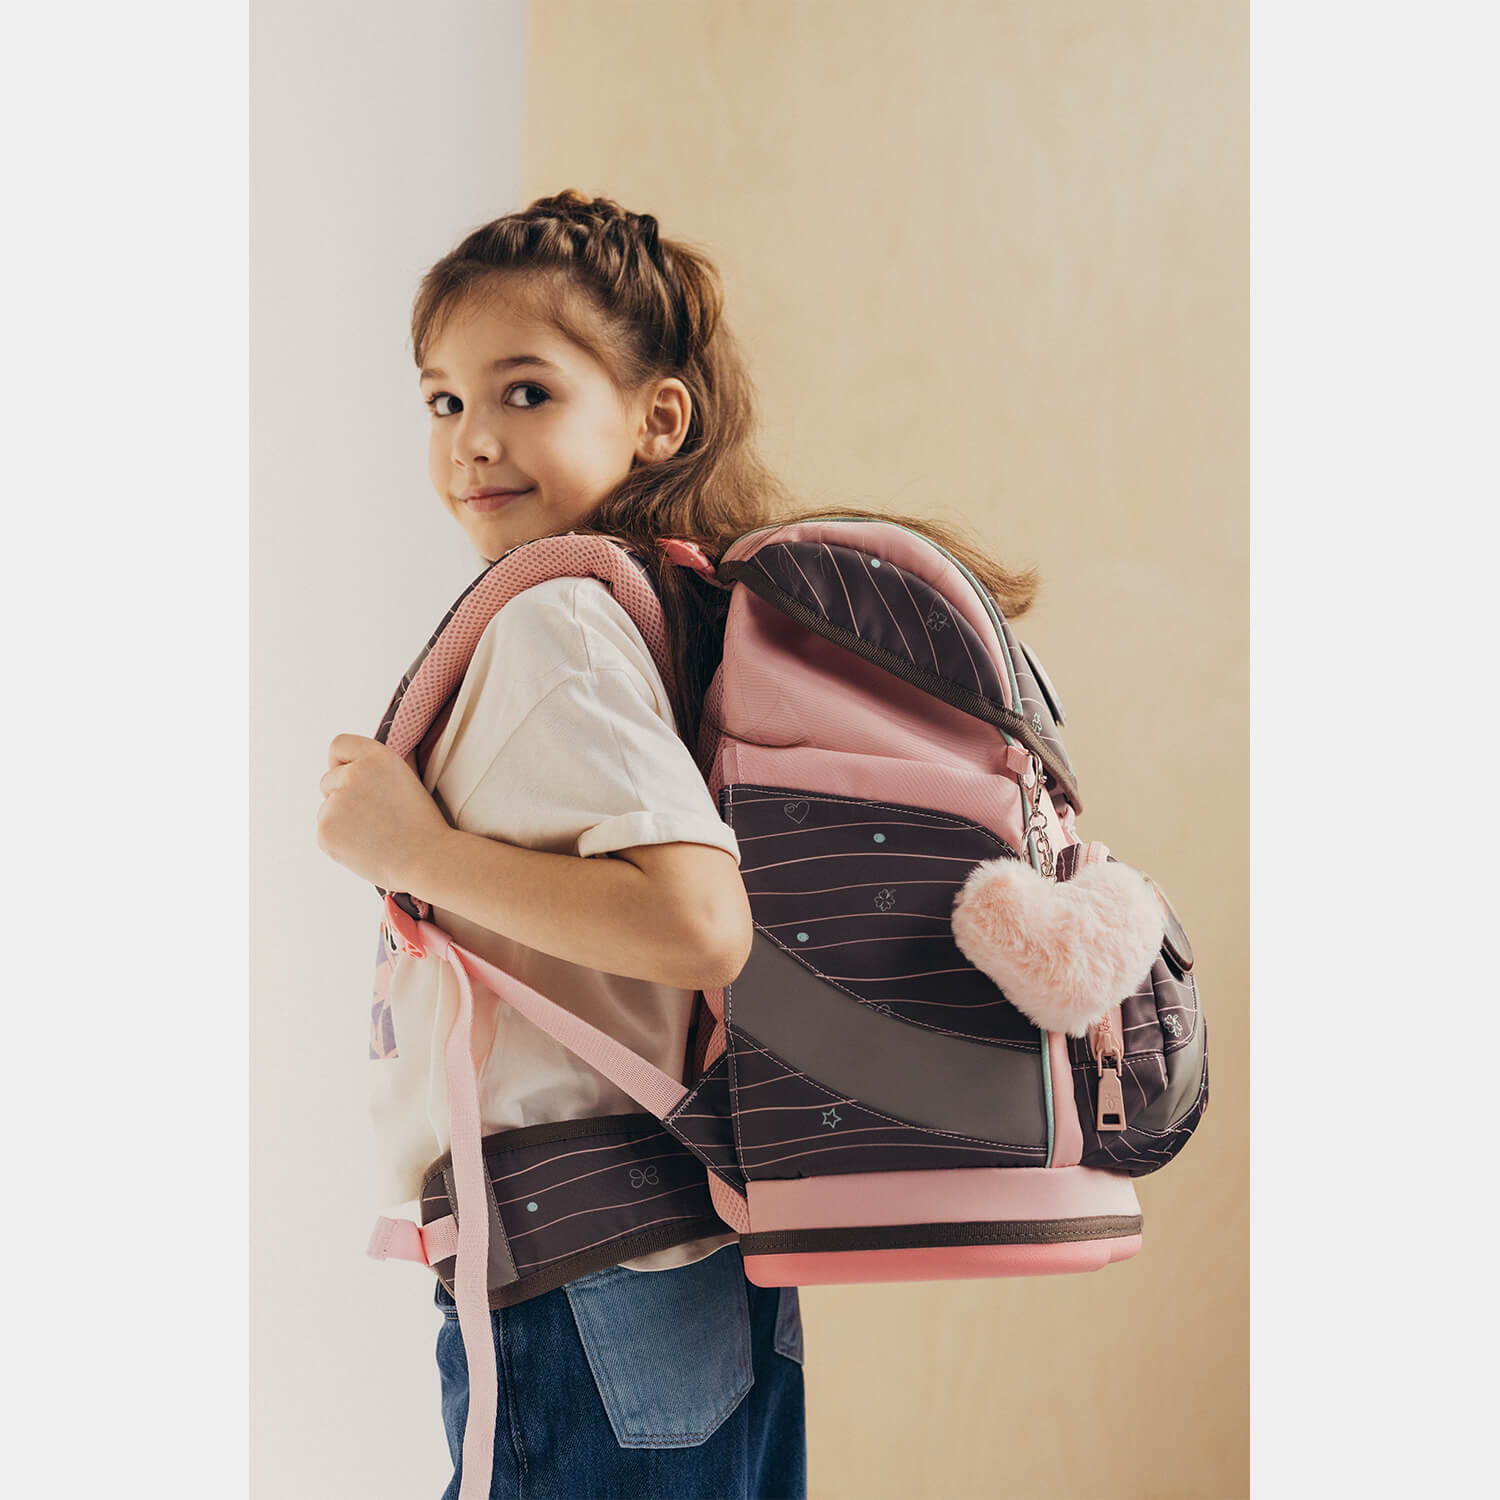 Smarty Plus Mint Schoolbag set 5pcs.